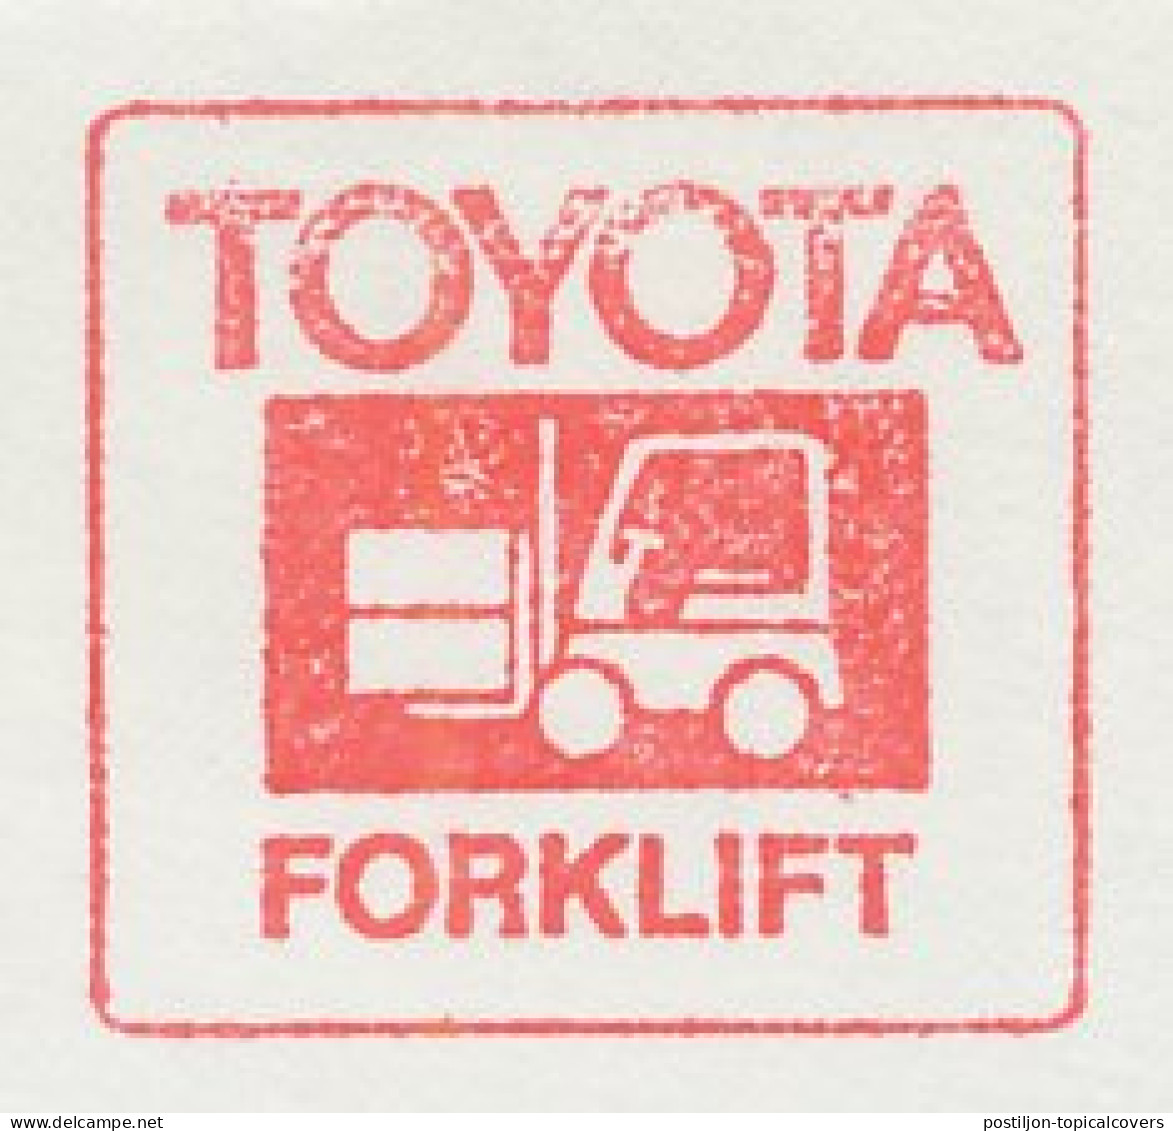 Meter Cut Belgium 1974 Forklift - Toyota - Altri & Non Classificati